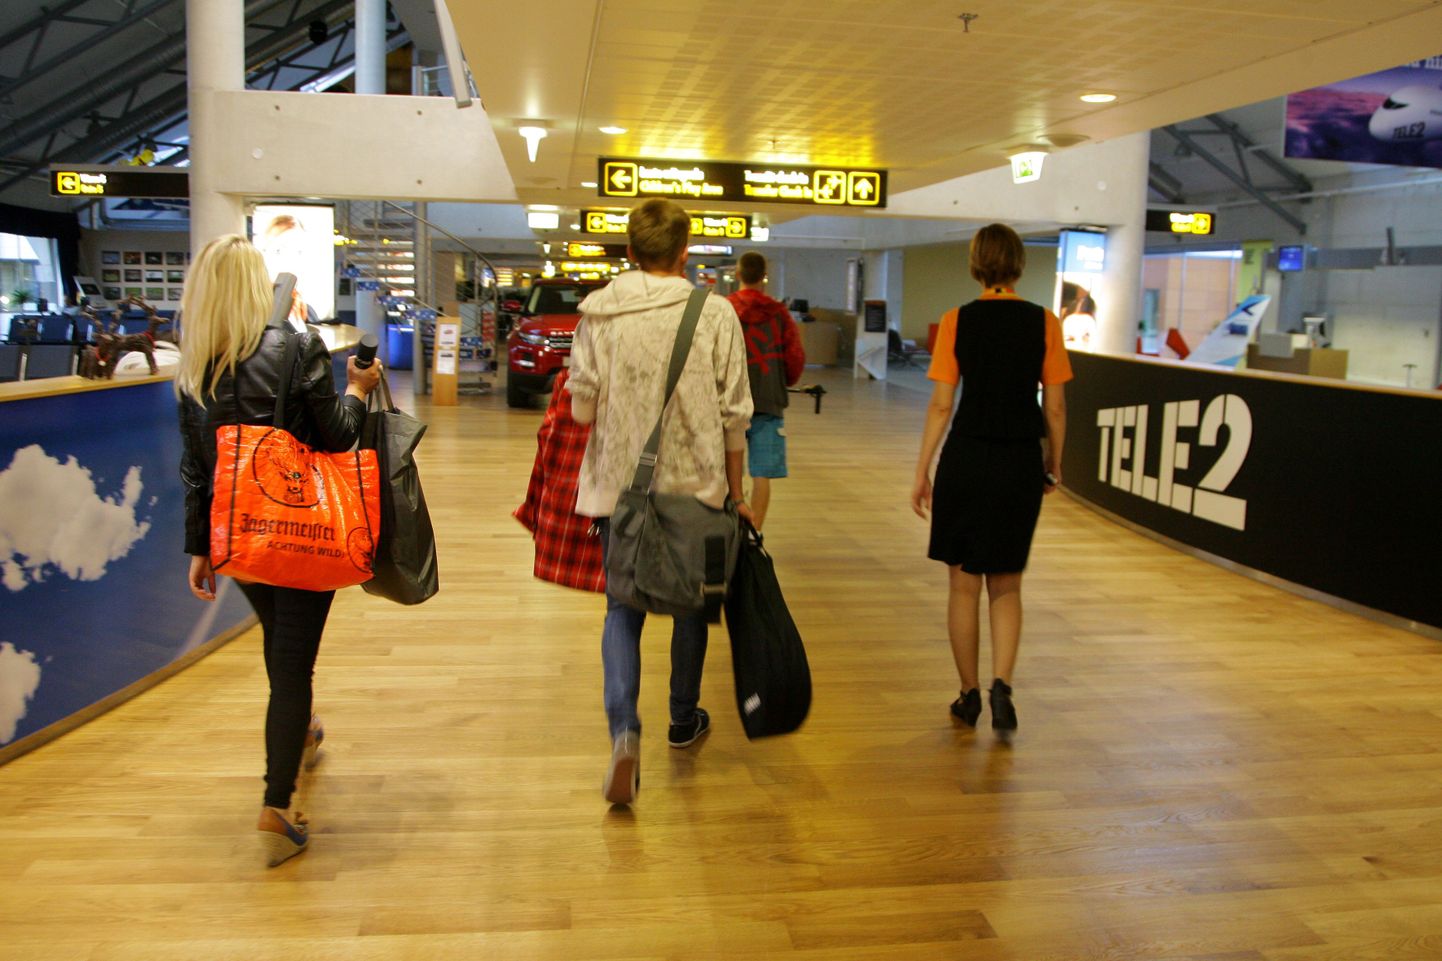 Tallinna lennujaamas õnneks pikalt kõndima ei pea.